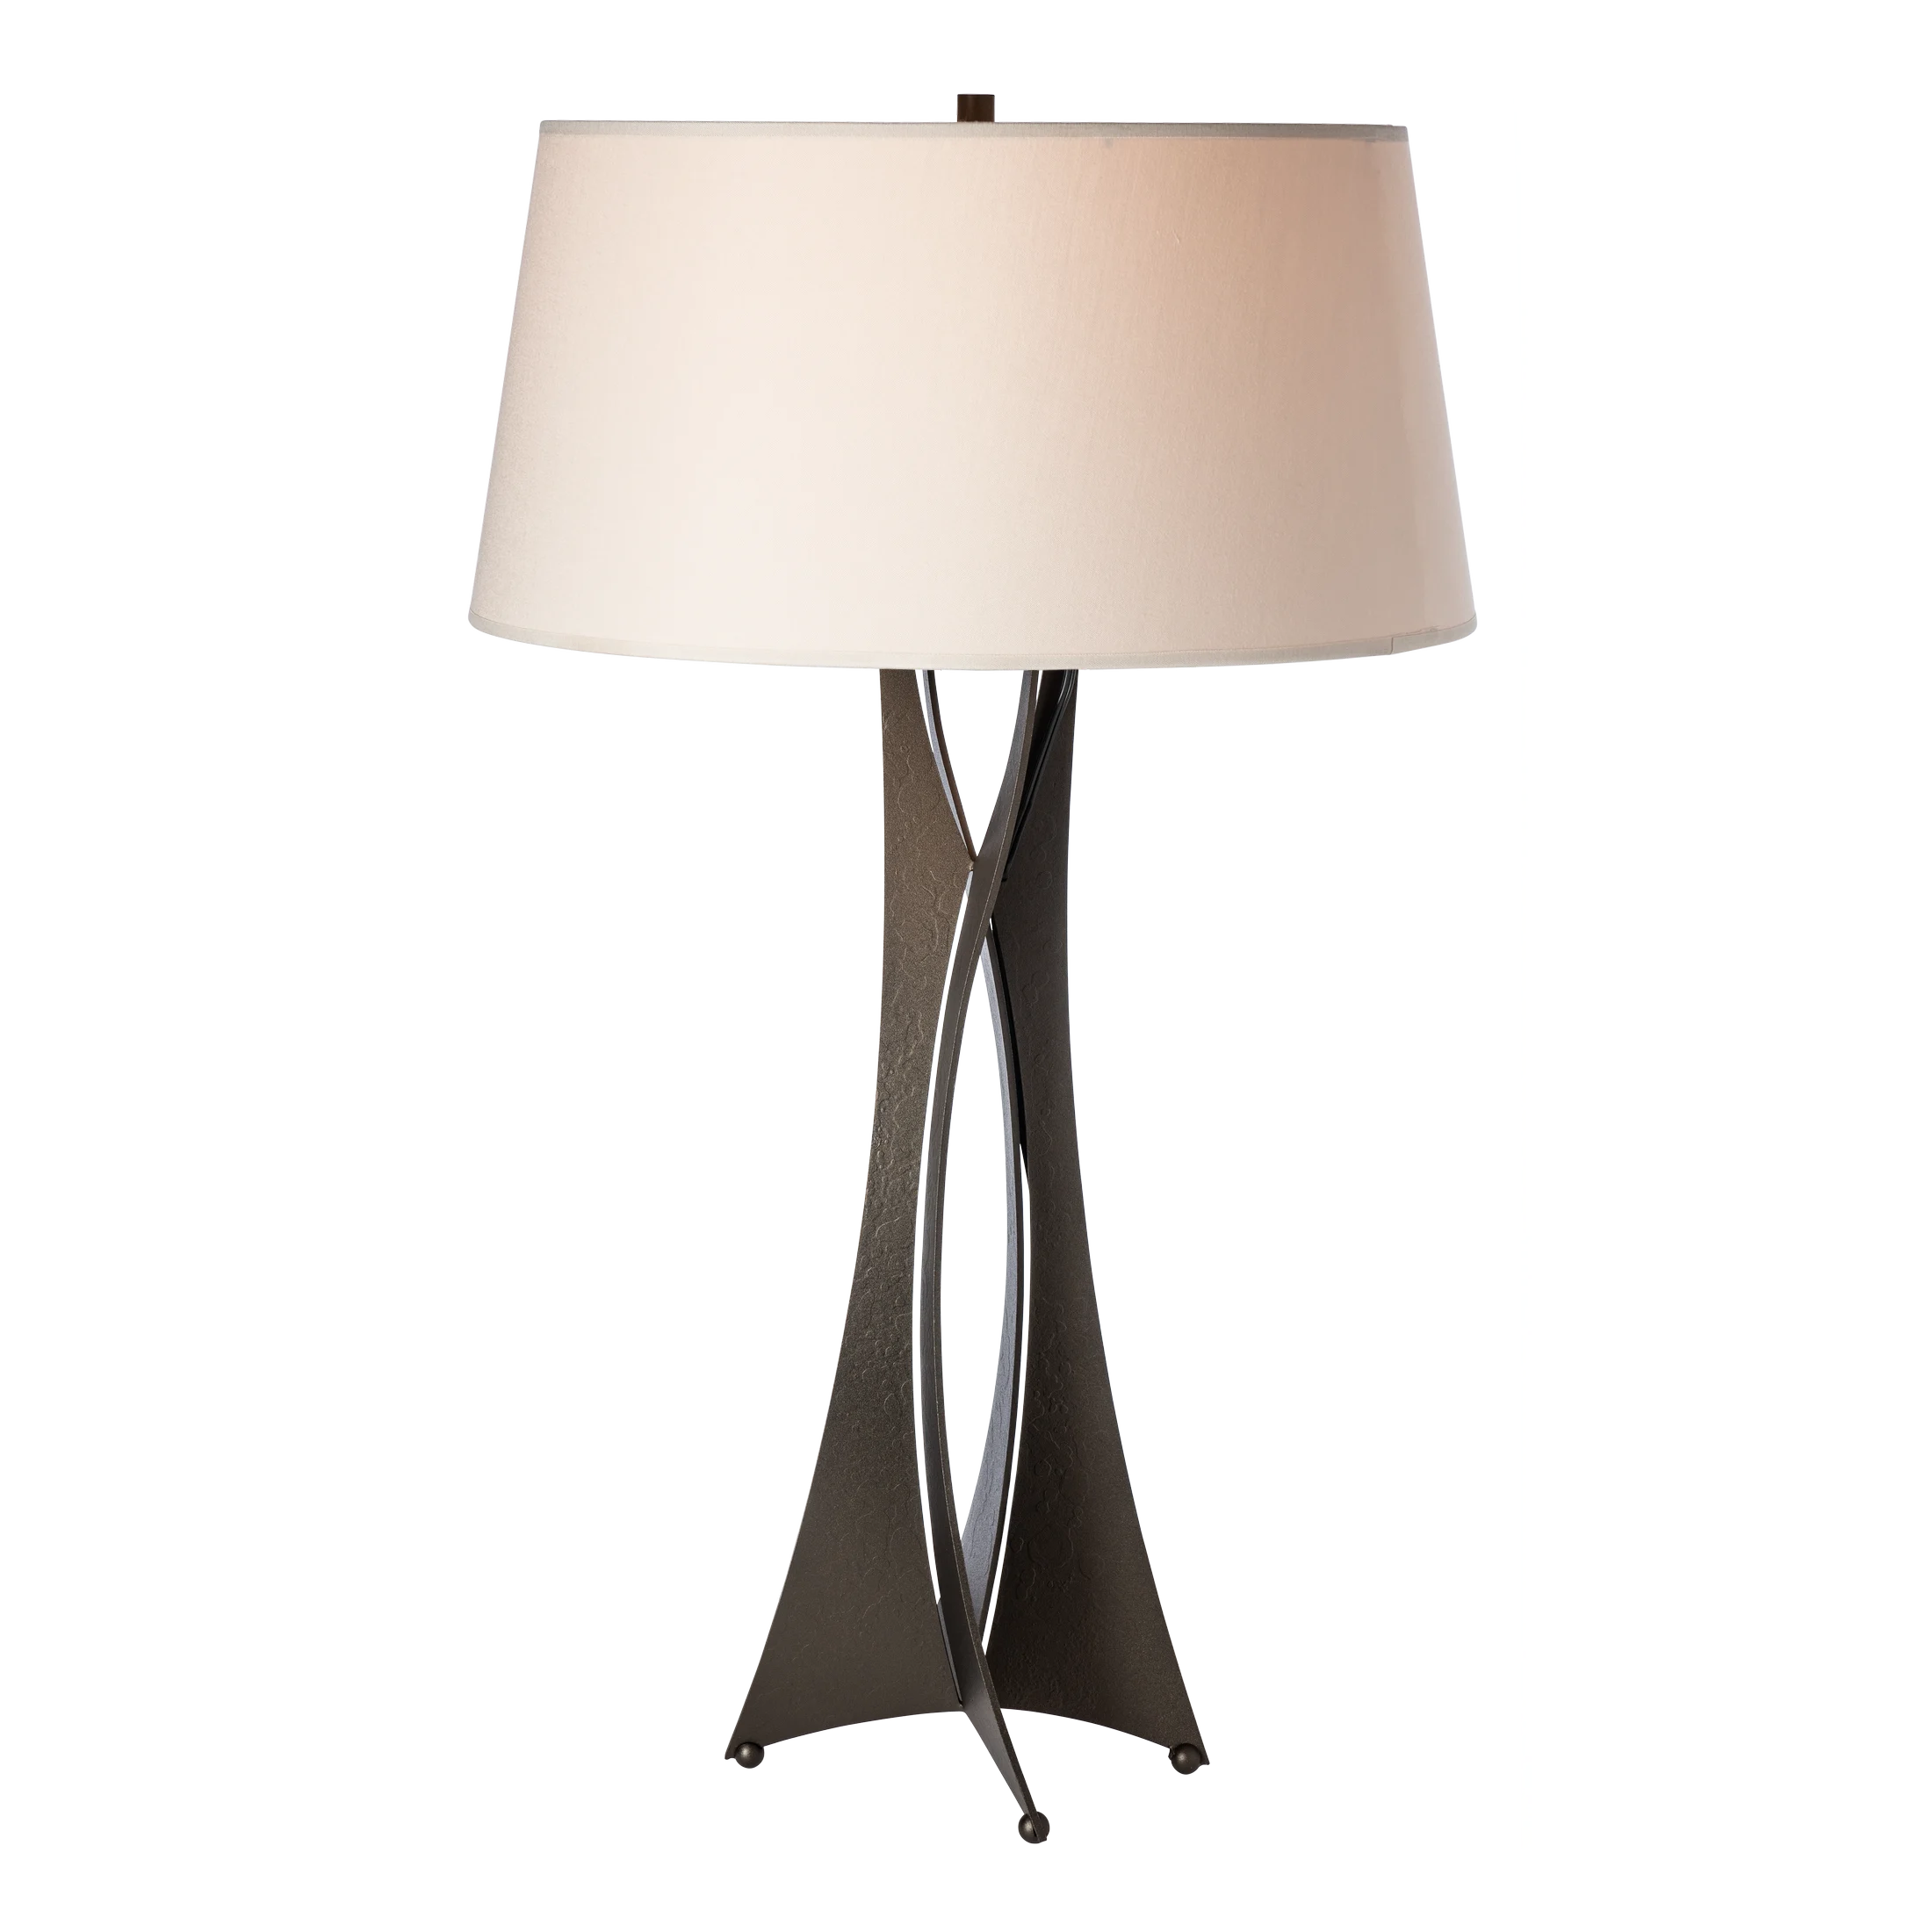 Moreau Tall Table Lamp